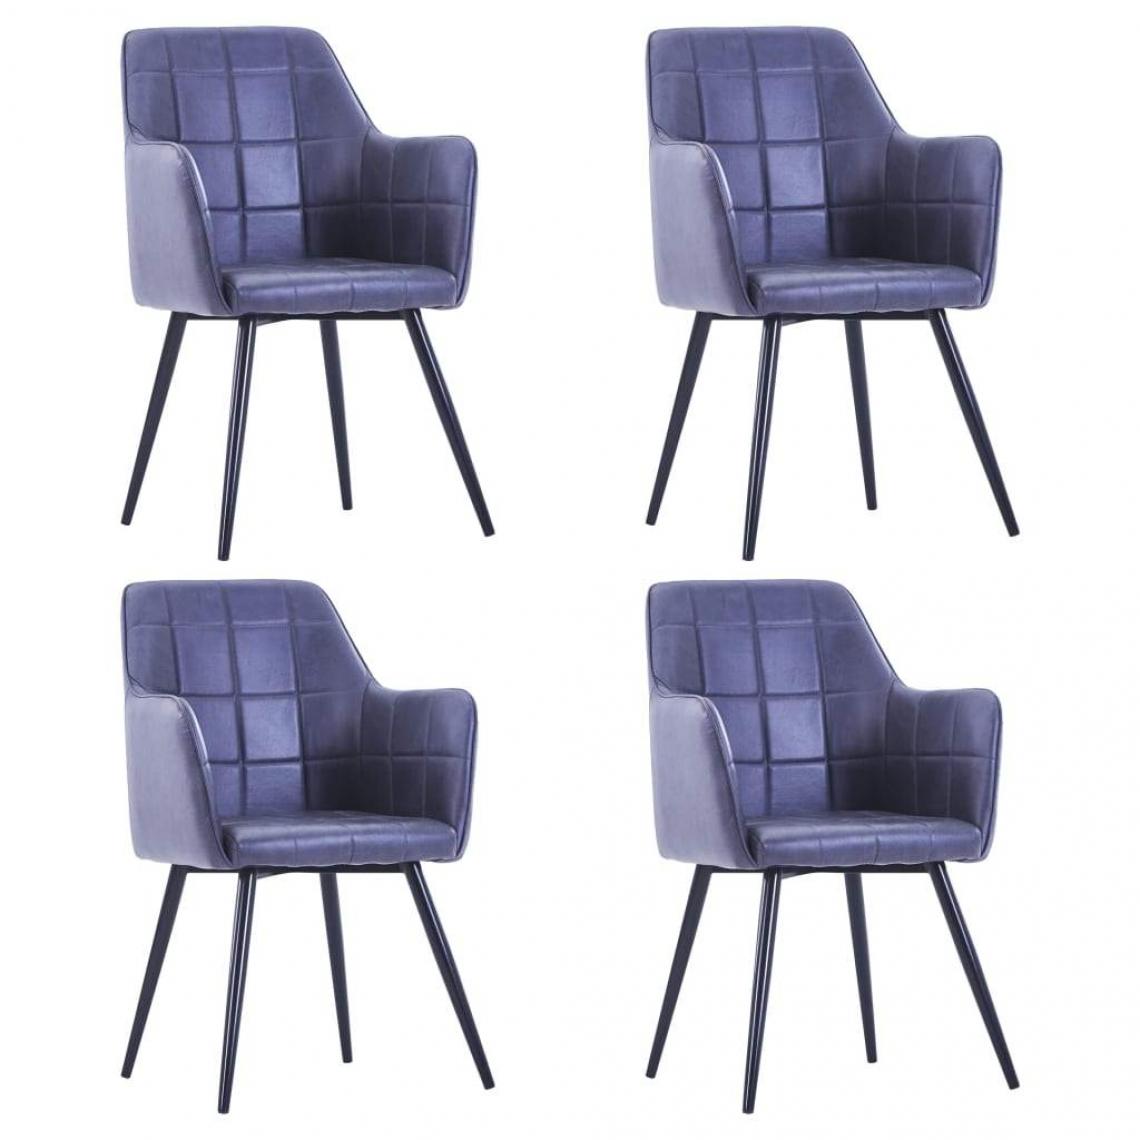 Decoshop26 - Lot de 4 chaises de salle à manger cuisine design moderne similicuir daim gris CDS021607 - Chaises